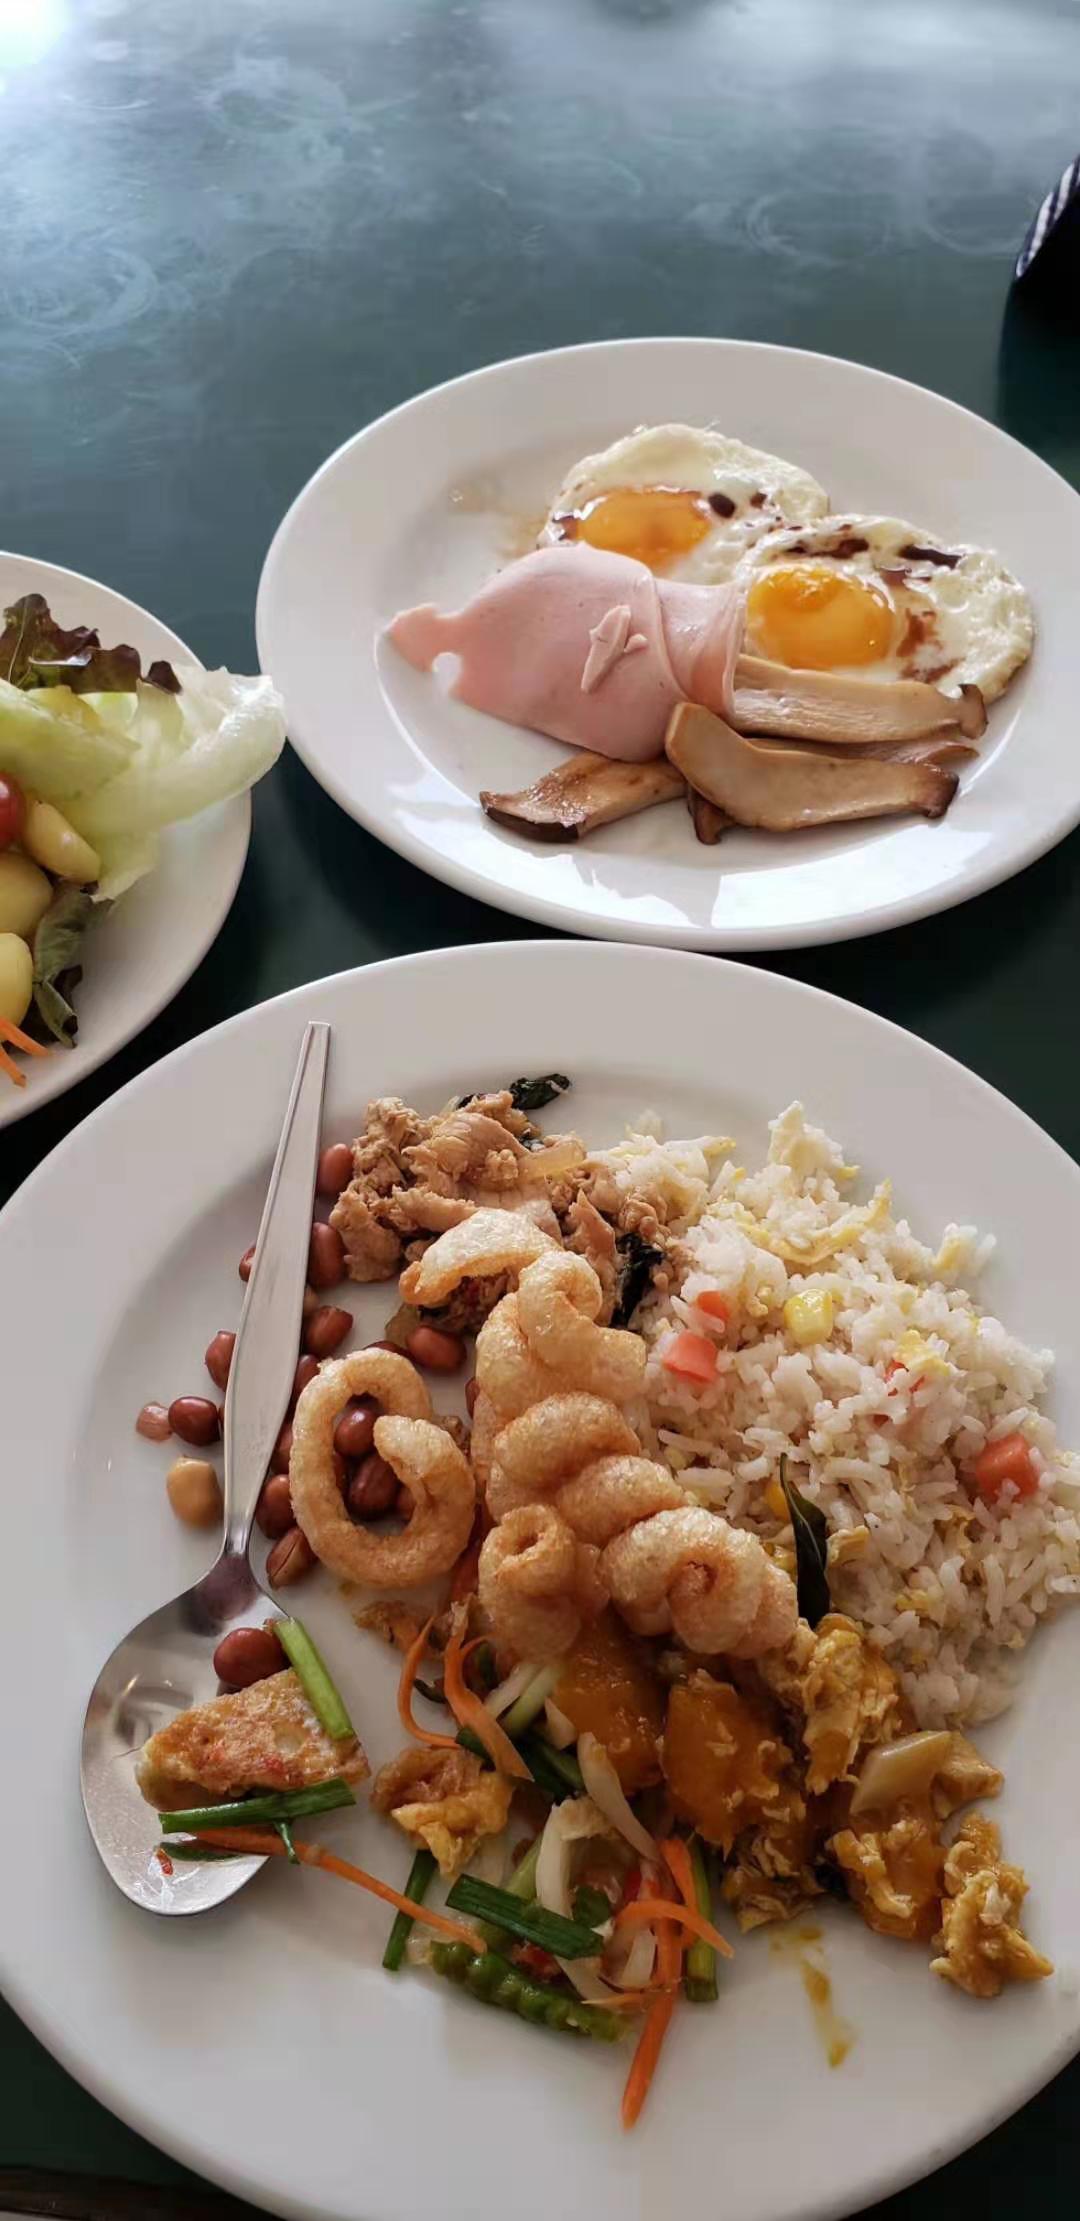 泰国人早餐这样吃 常见的3道泰式早餐 - 哔哩哔哩